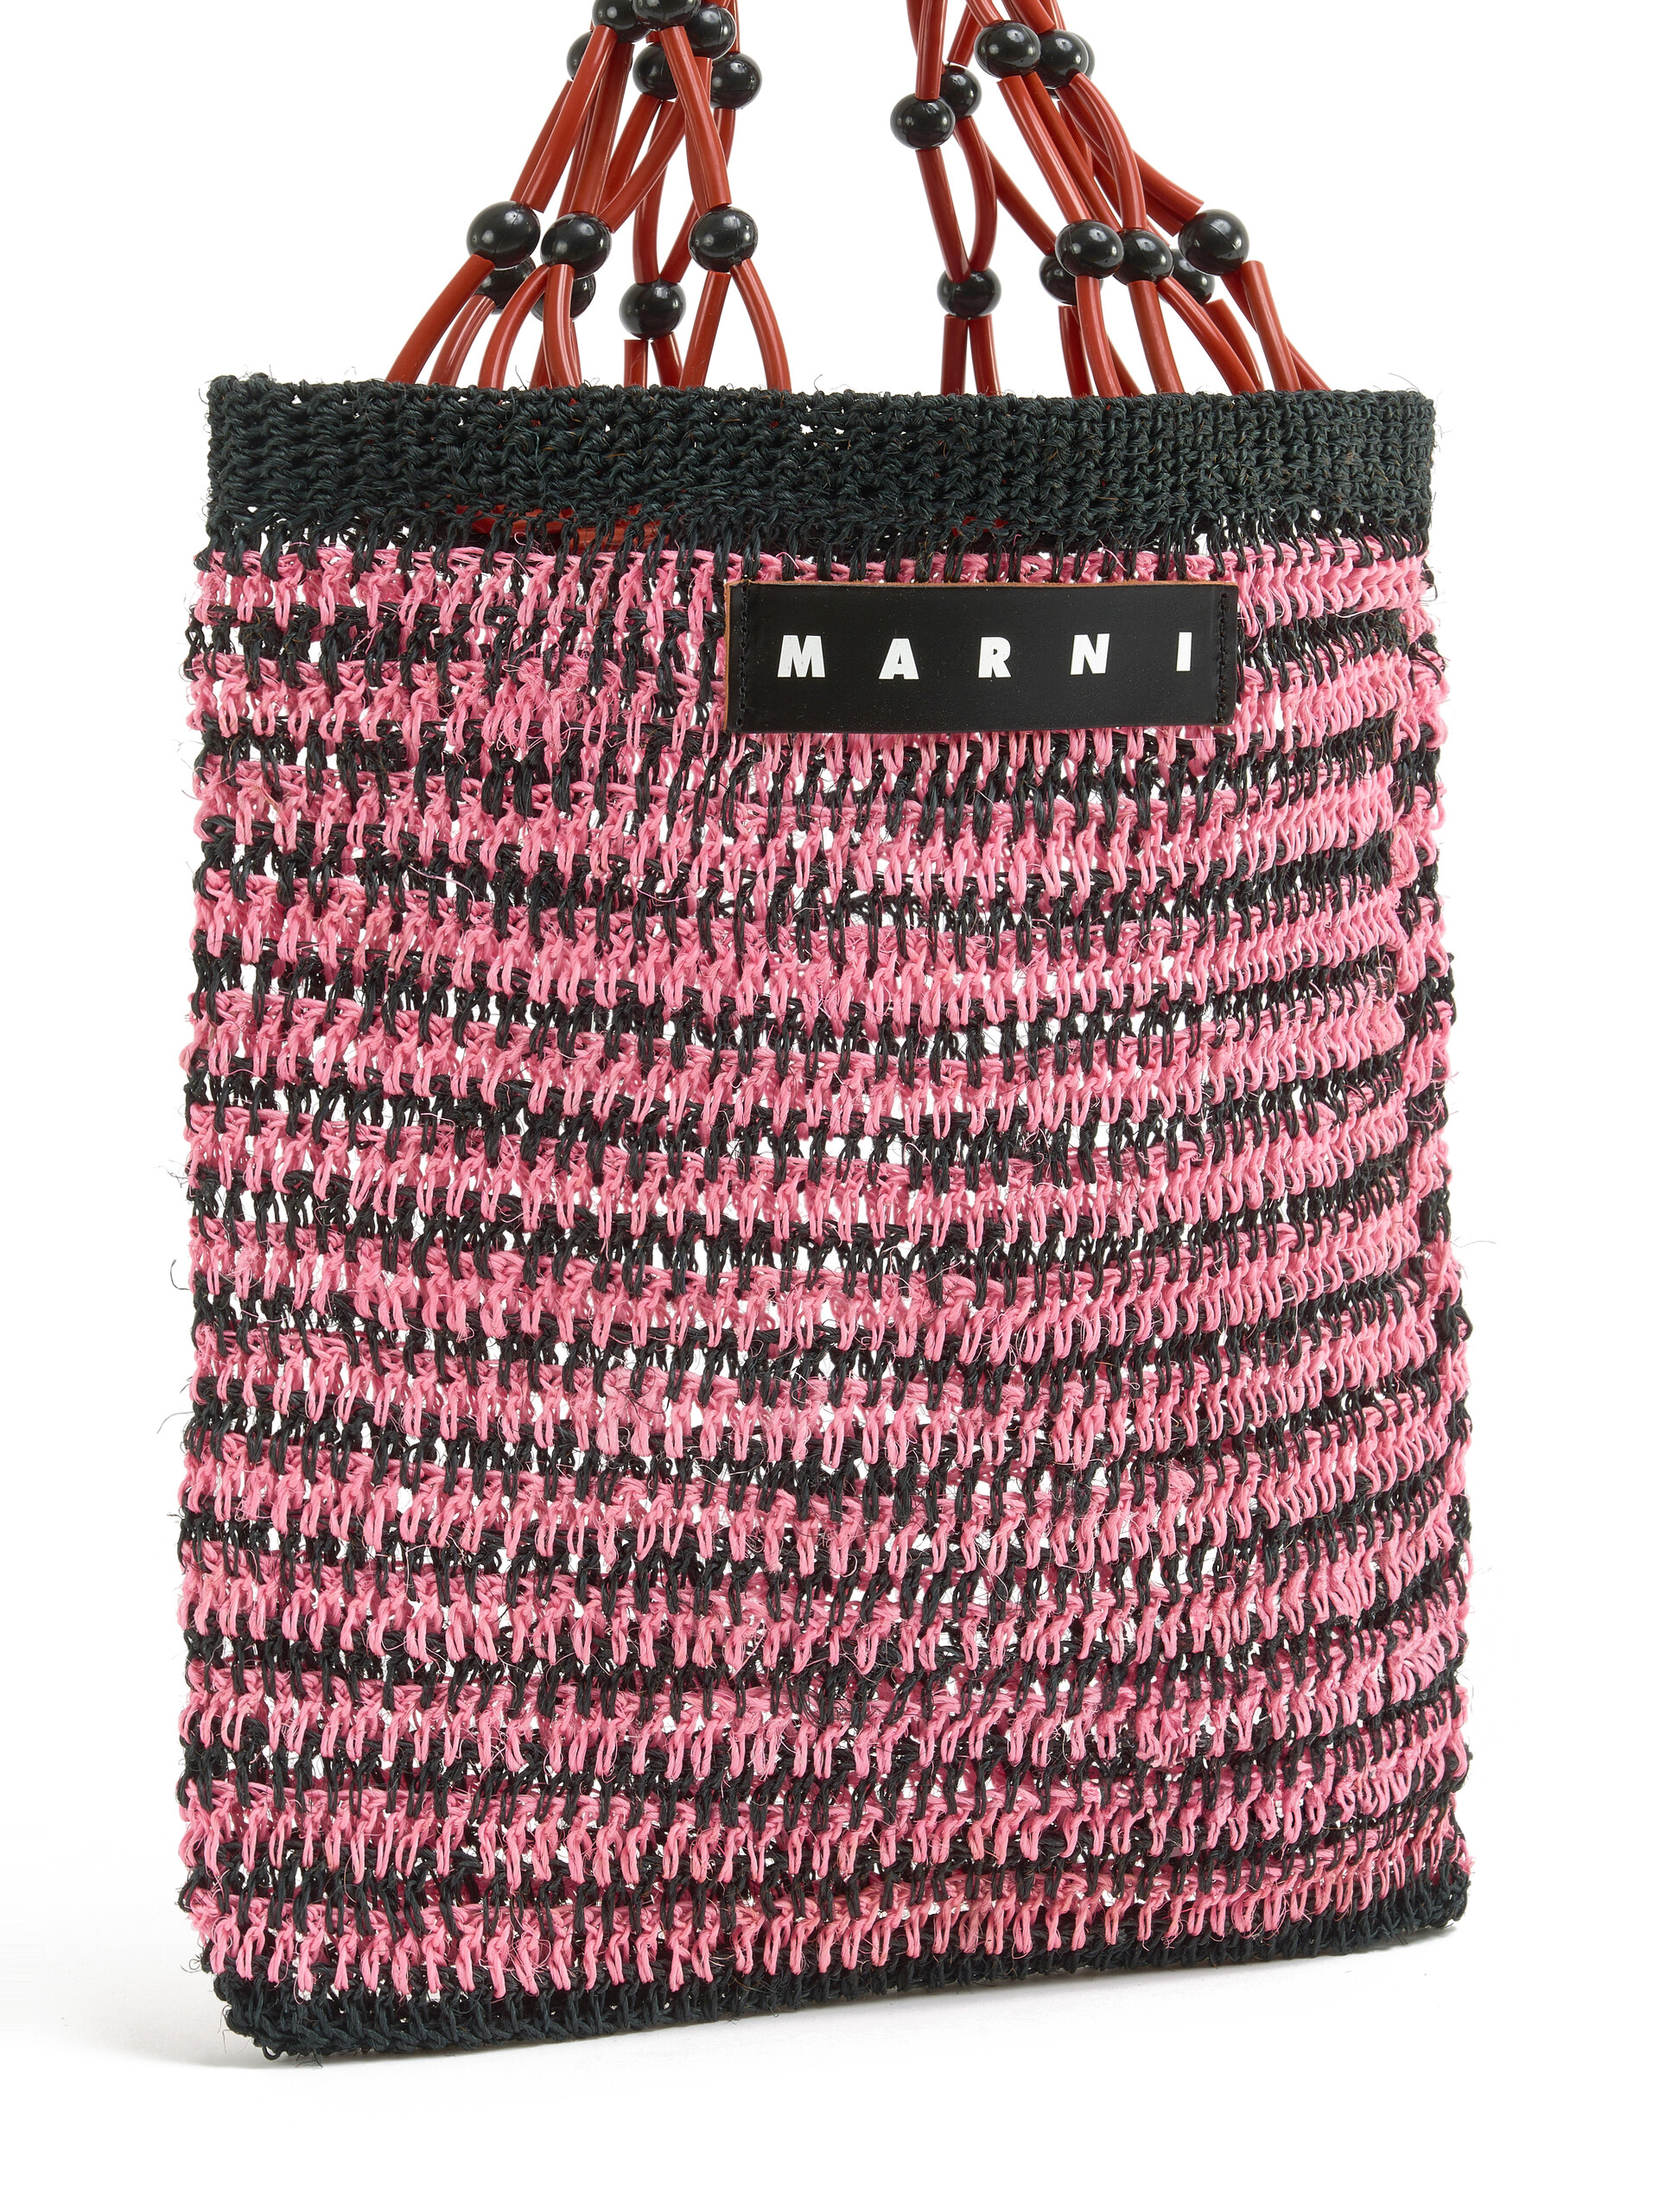 Bolso shopper MARNI MARKET FIQUE de red de fibra natural marrón - Bolsos shopper - Image 4